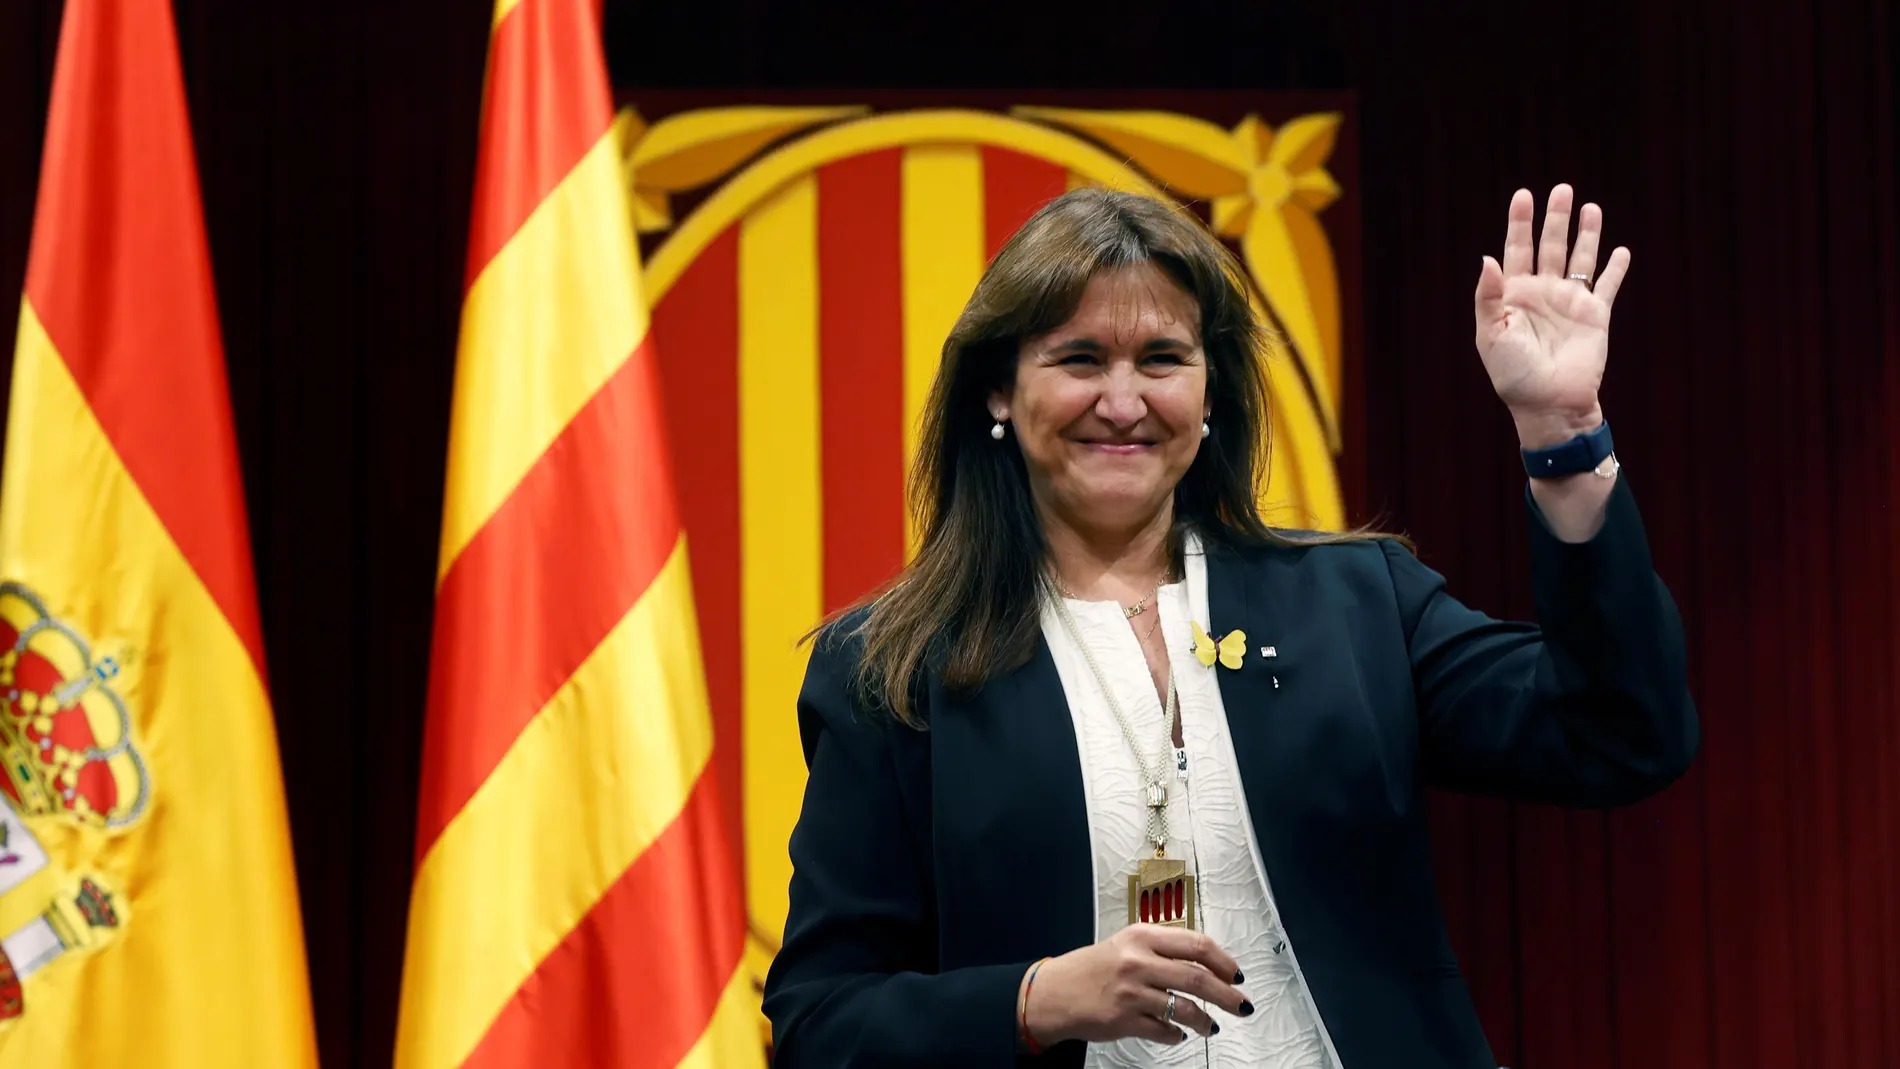 Laura Borràs de JxCat, en su lugar de la Mesa en el hemiciclo tras elegida nueva presidenta de la cámara catalana